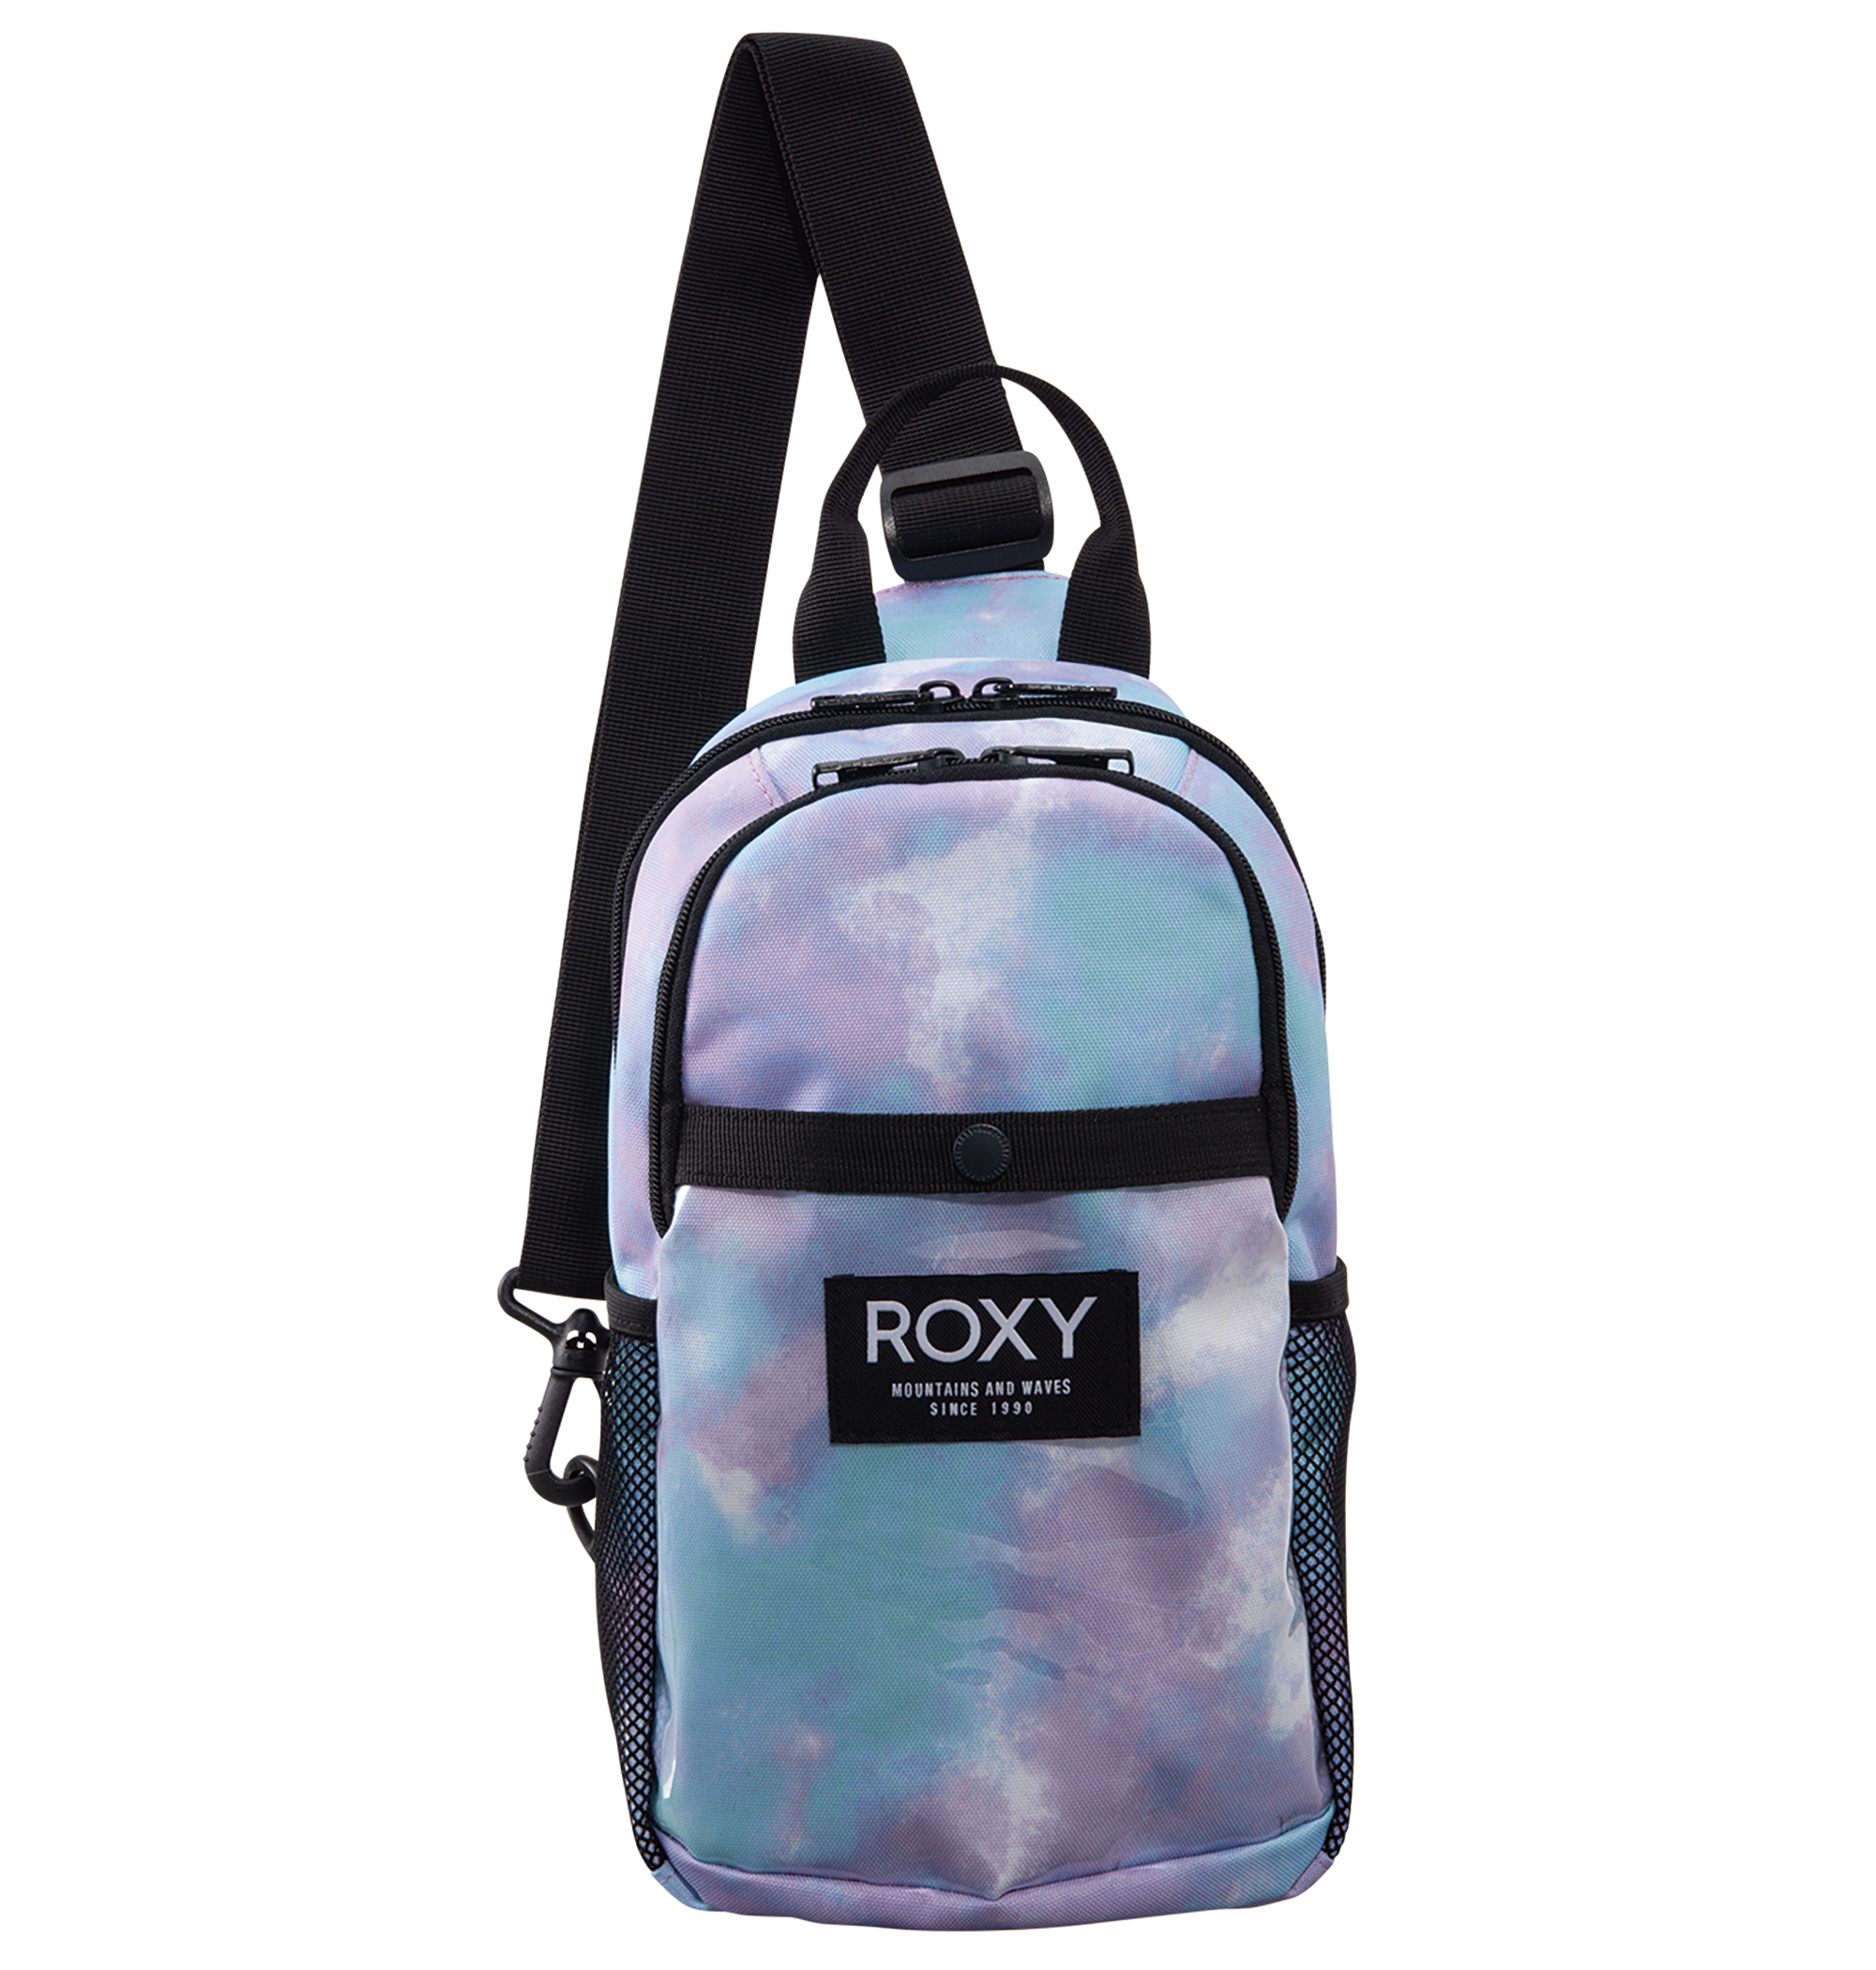 ＜Roxy＞BUTTER UP コンパクトなサイズながらマチやポケットがあり、安心感のある収納力が魅力的な斜めがけバッグ